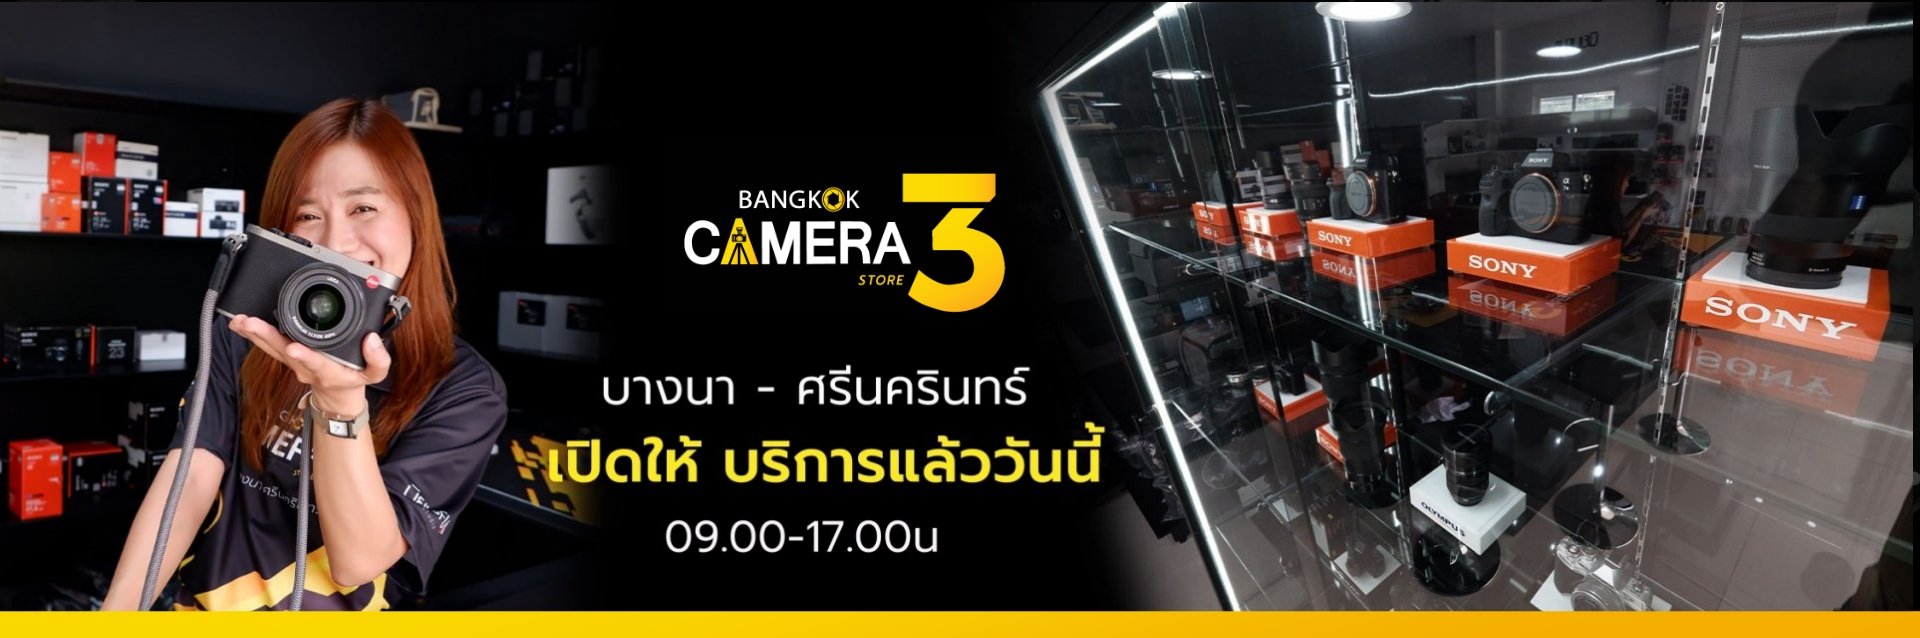 BangkokCamera Store3 รับซื้อกล้องมือสอง ทุกรุ่น บริการรับฝากขายกล้อง 